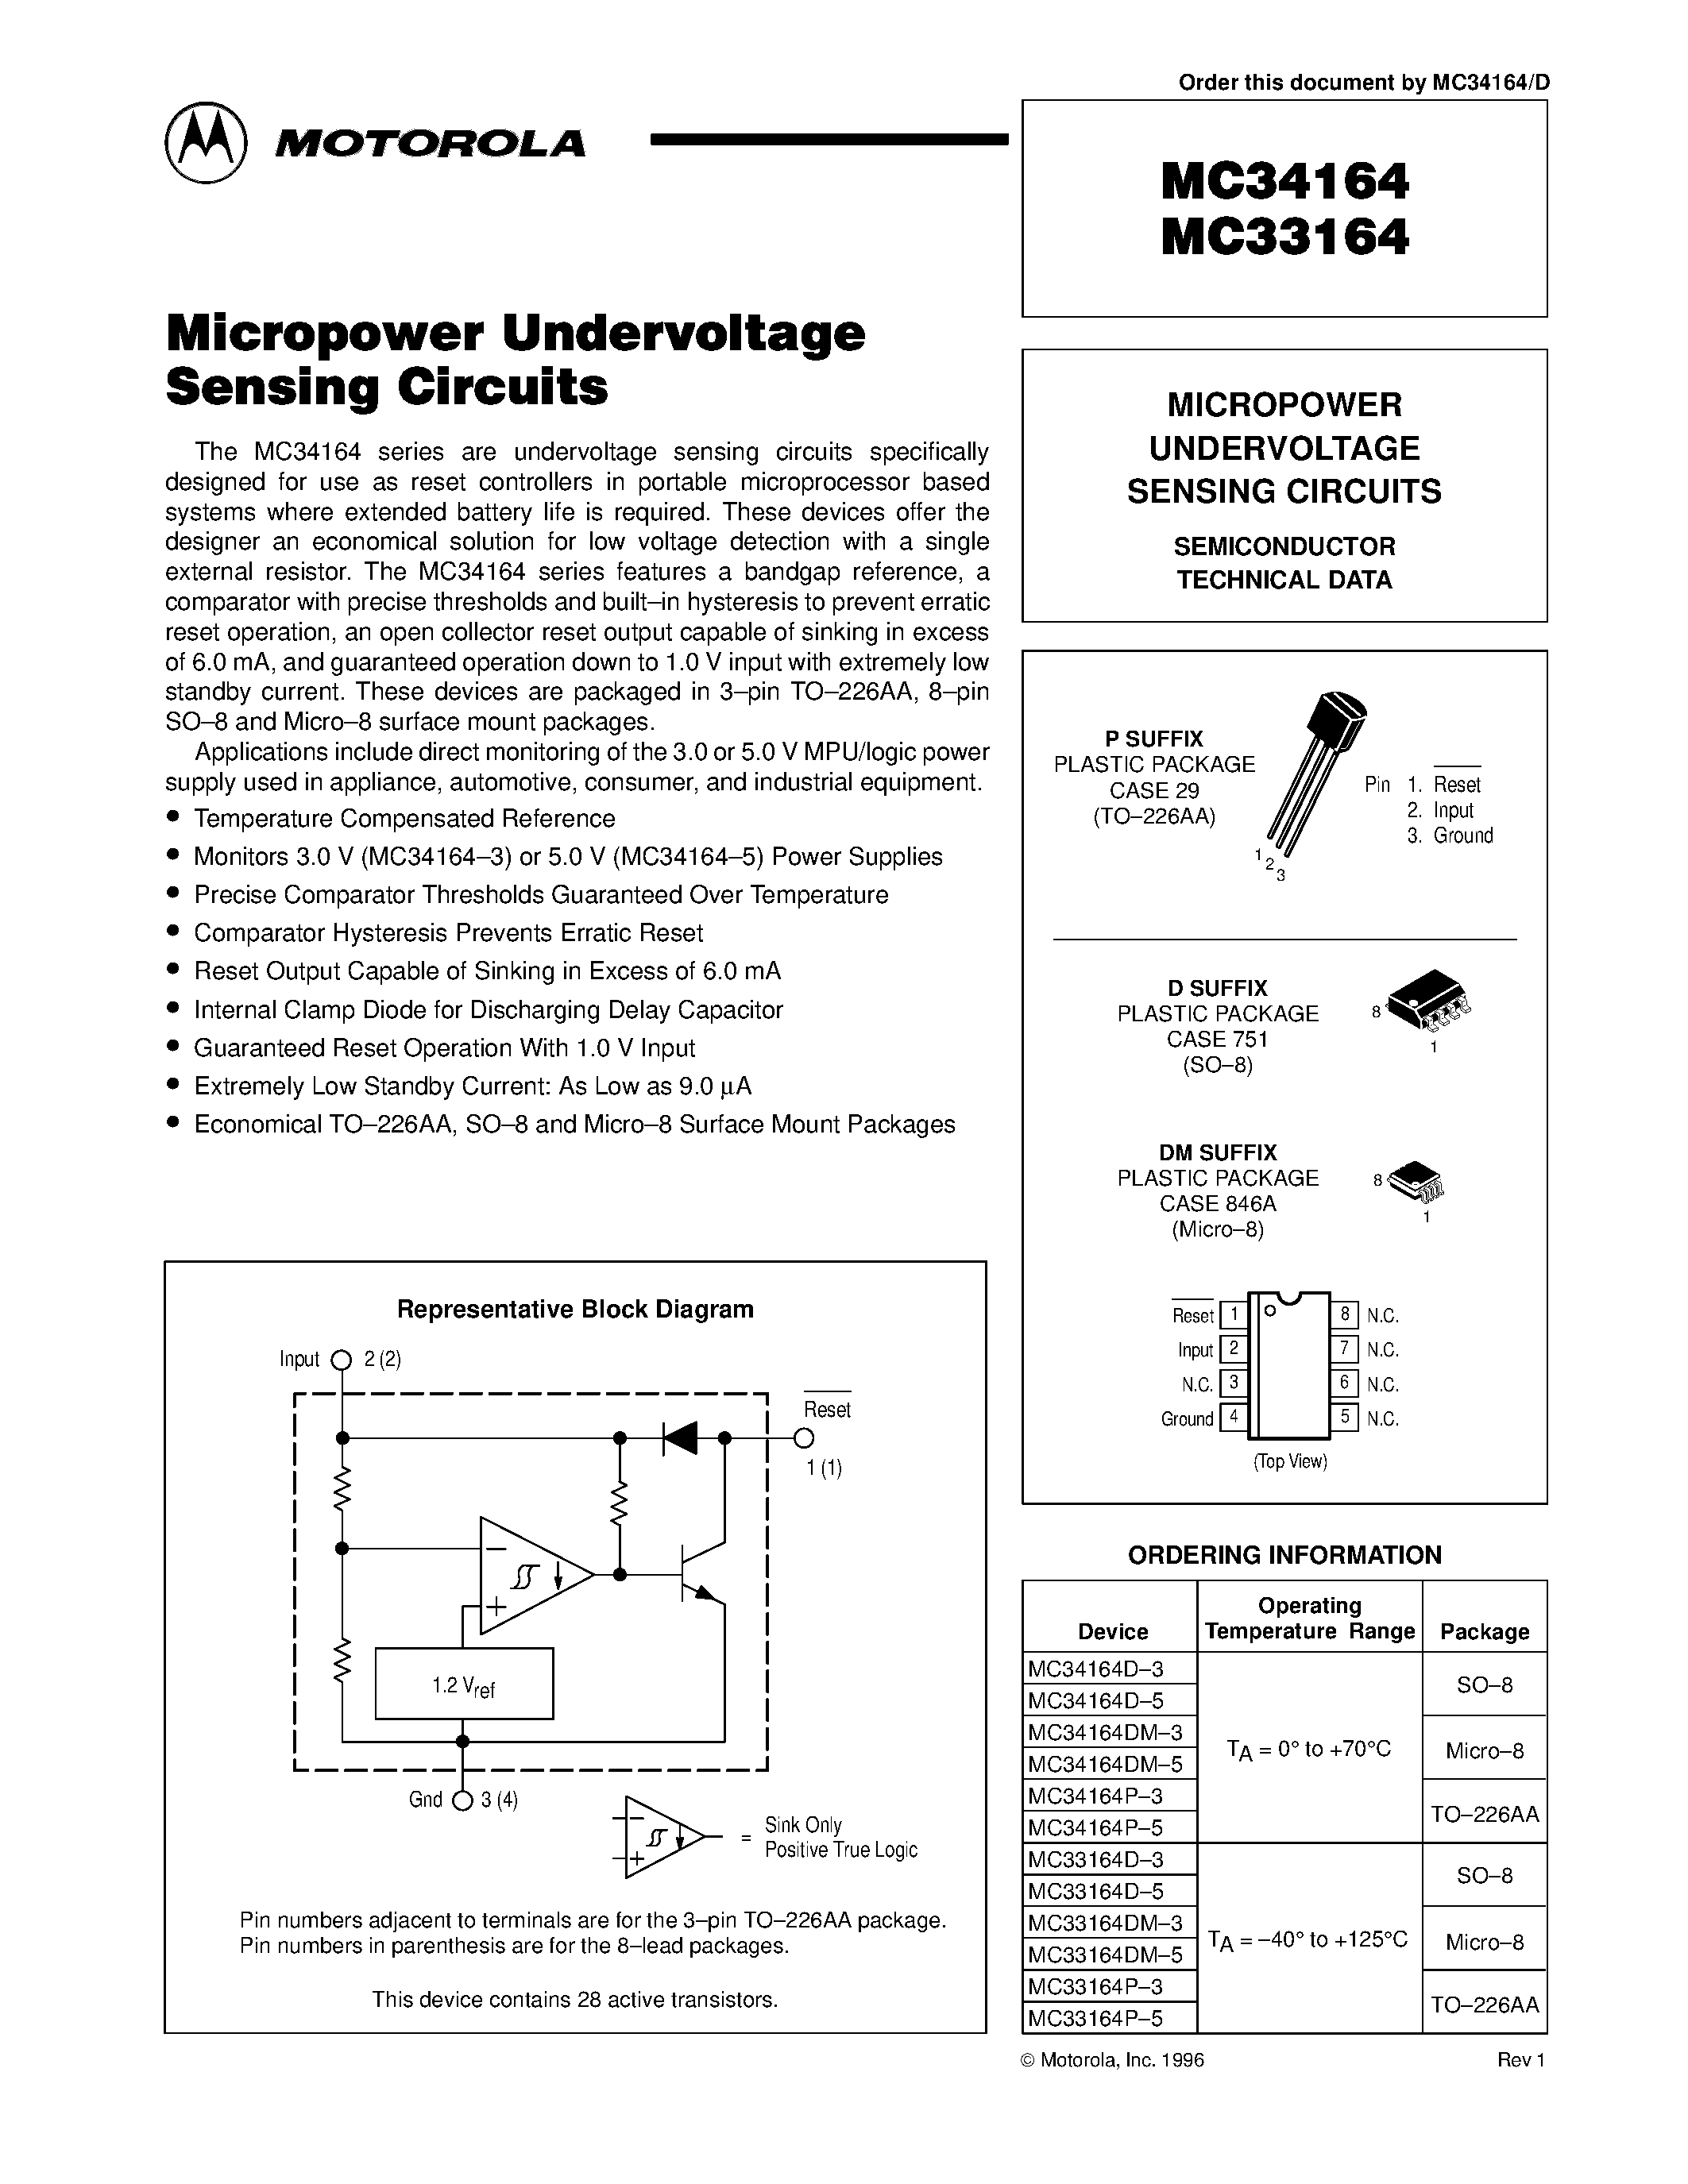 Datasheet MC33164 - MICROPOWER UNDERVOLTAGE SENSING CIRCUITS page 1